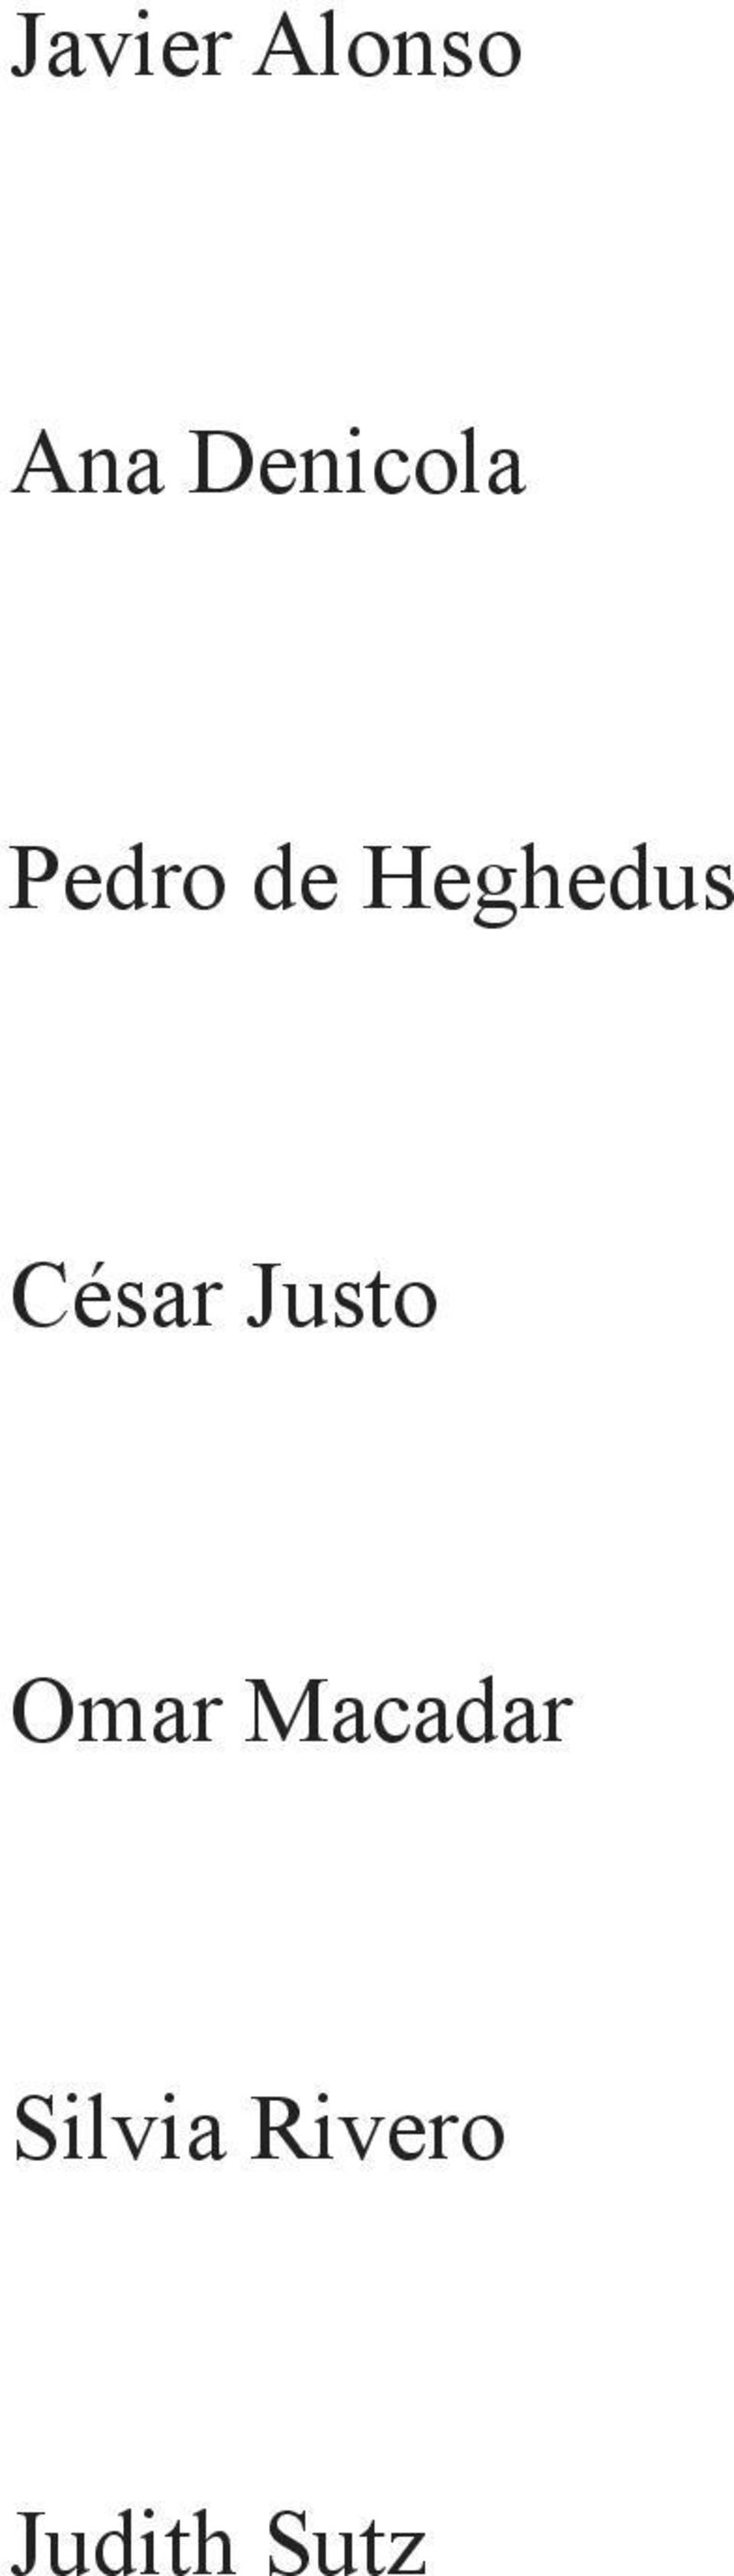 Heghedus César Justo